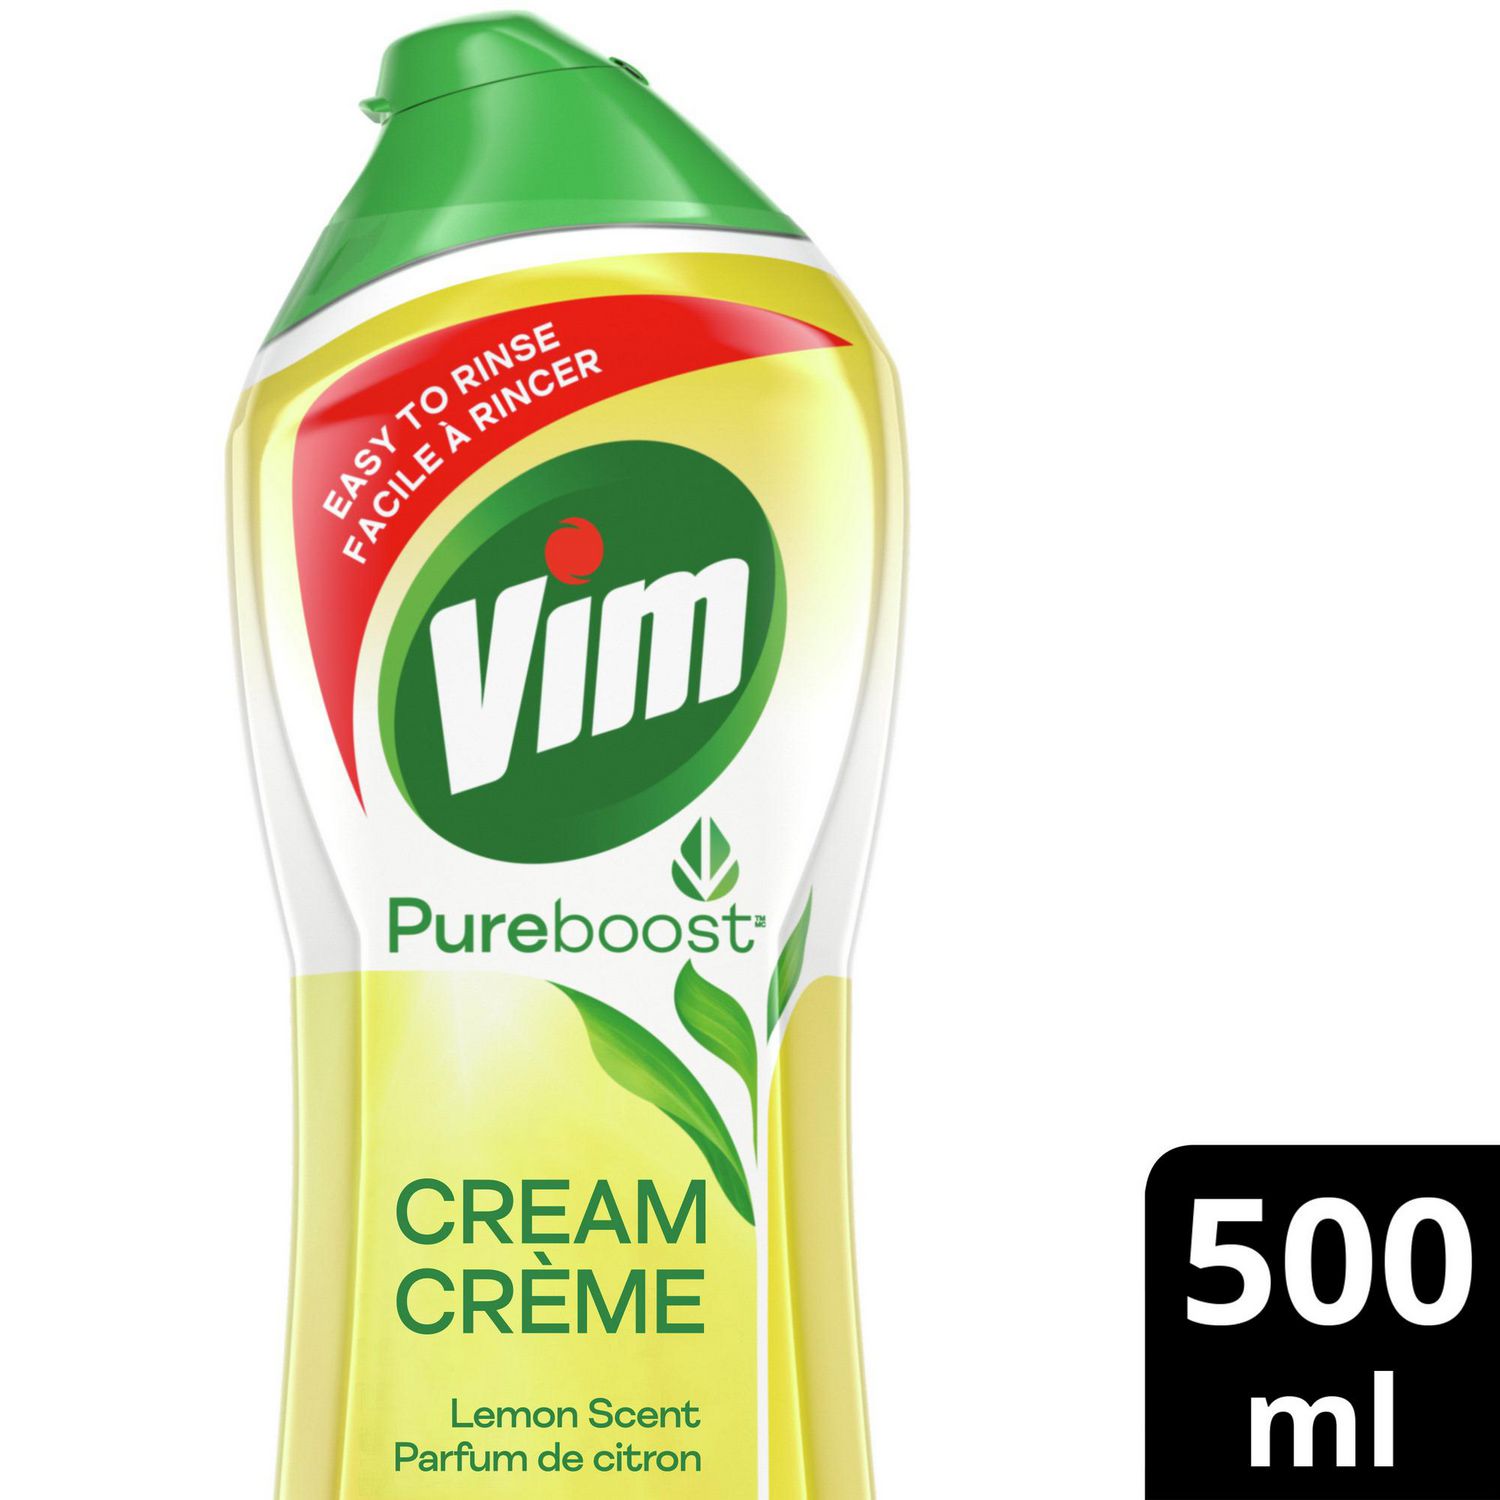 Inalipa - Product - Vim All-Purpose Cleaner Lemon Fresh 500g